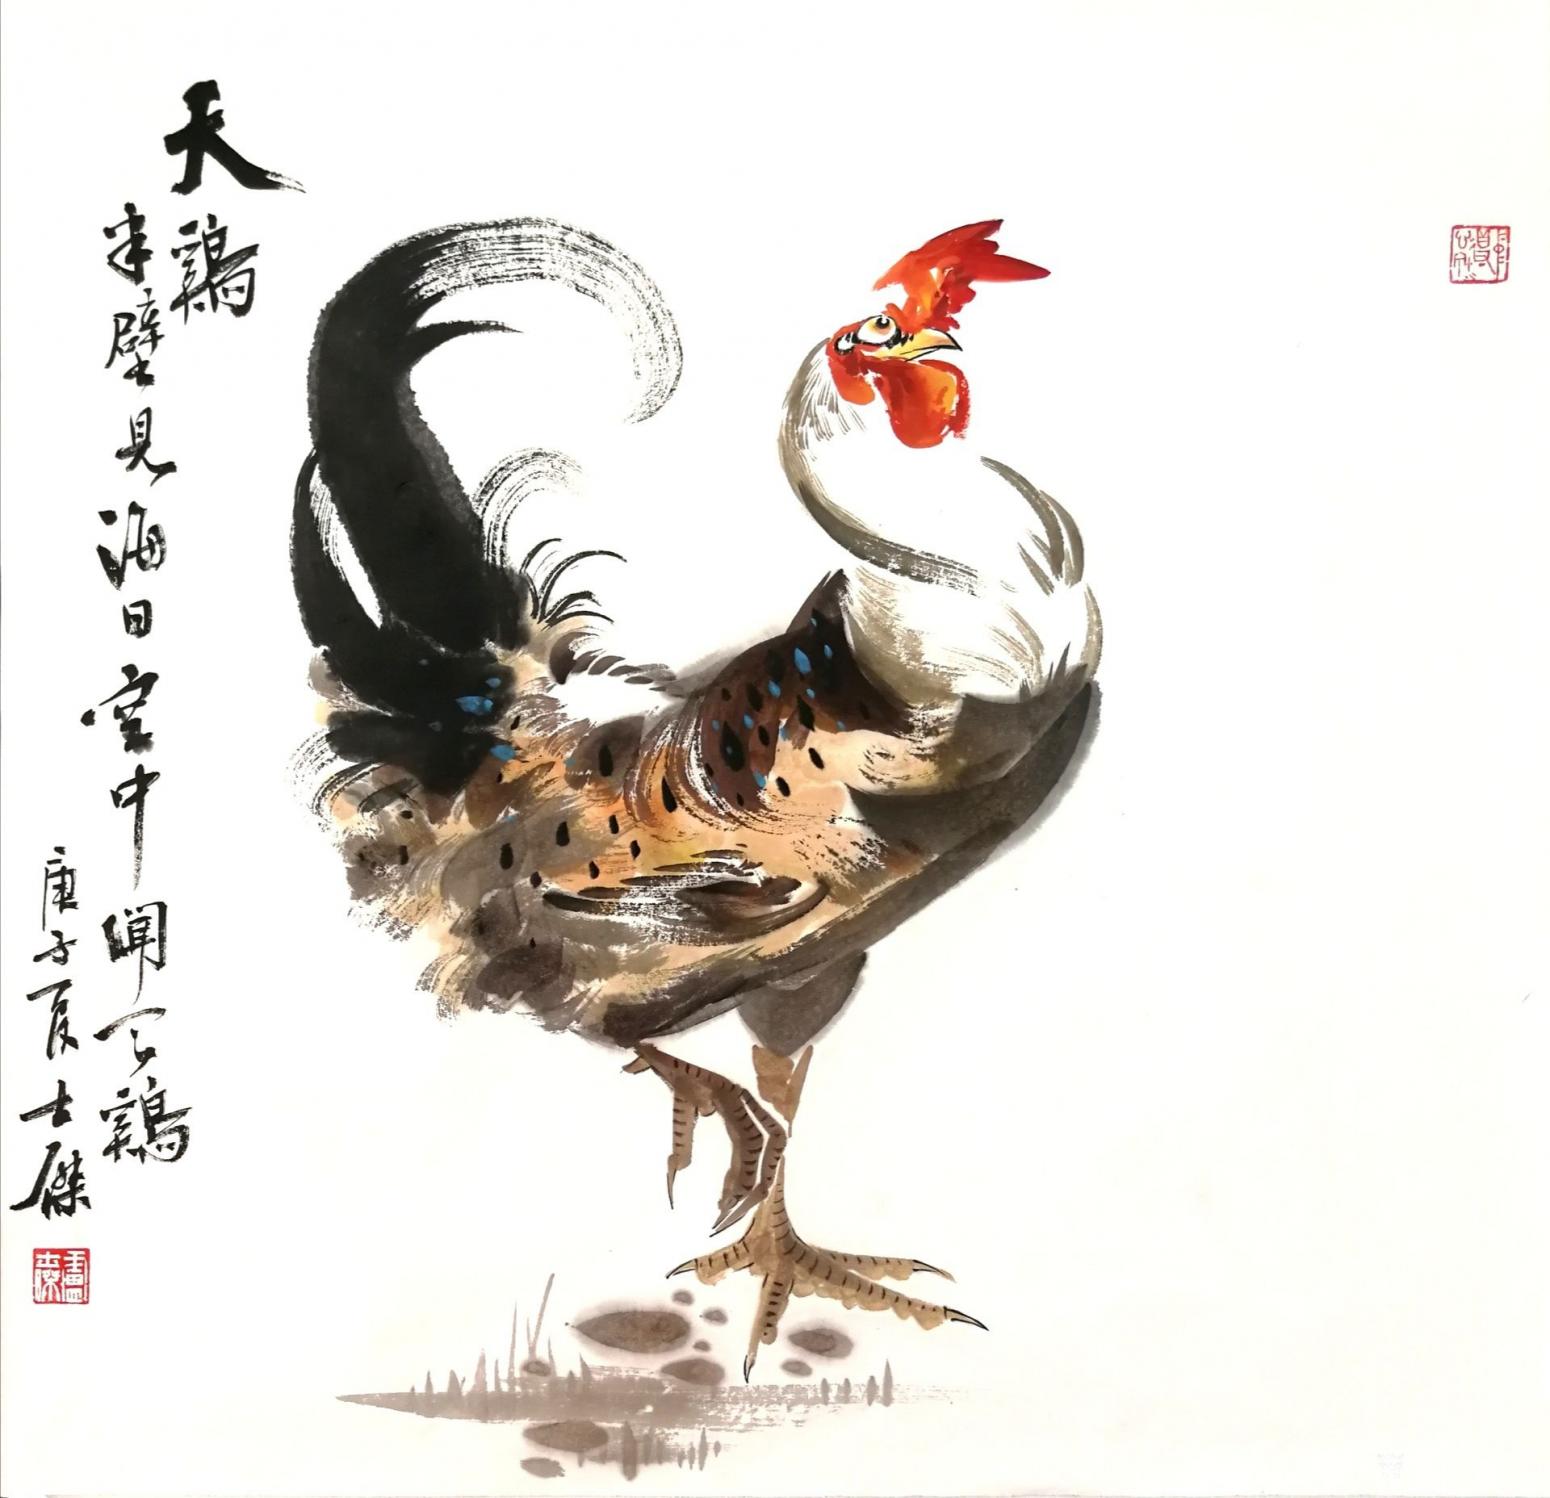 卢士杰国画作品《公鸡-半壁见海日》